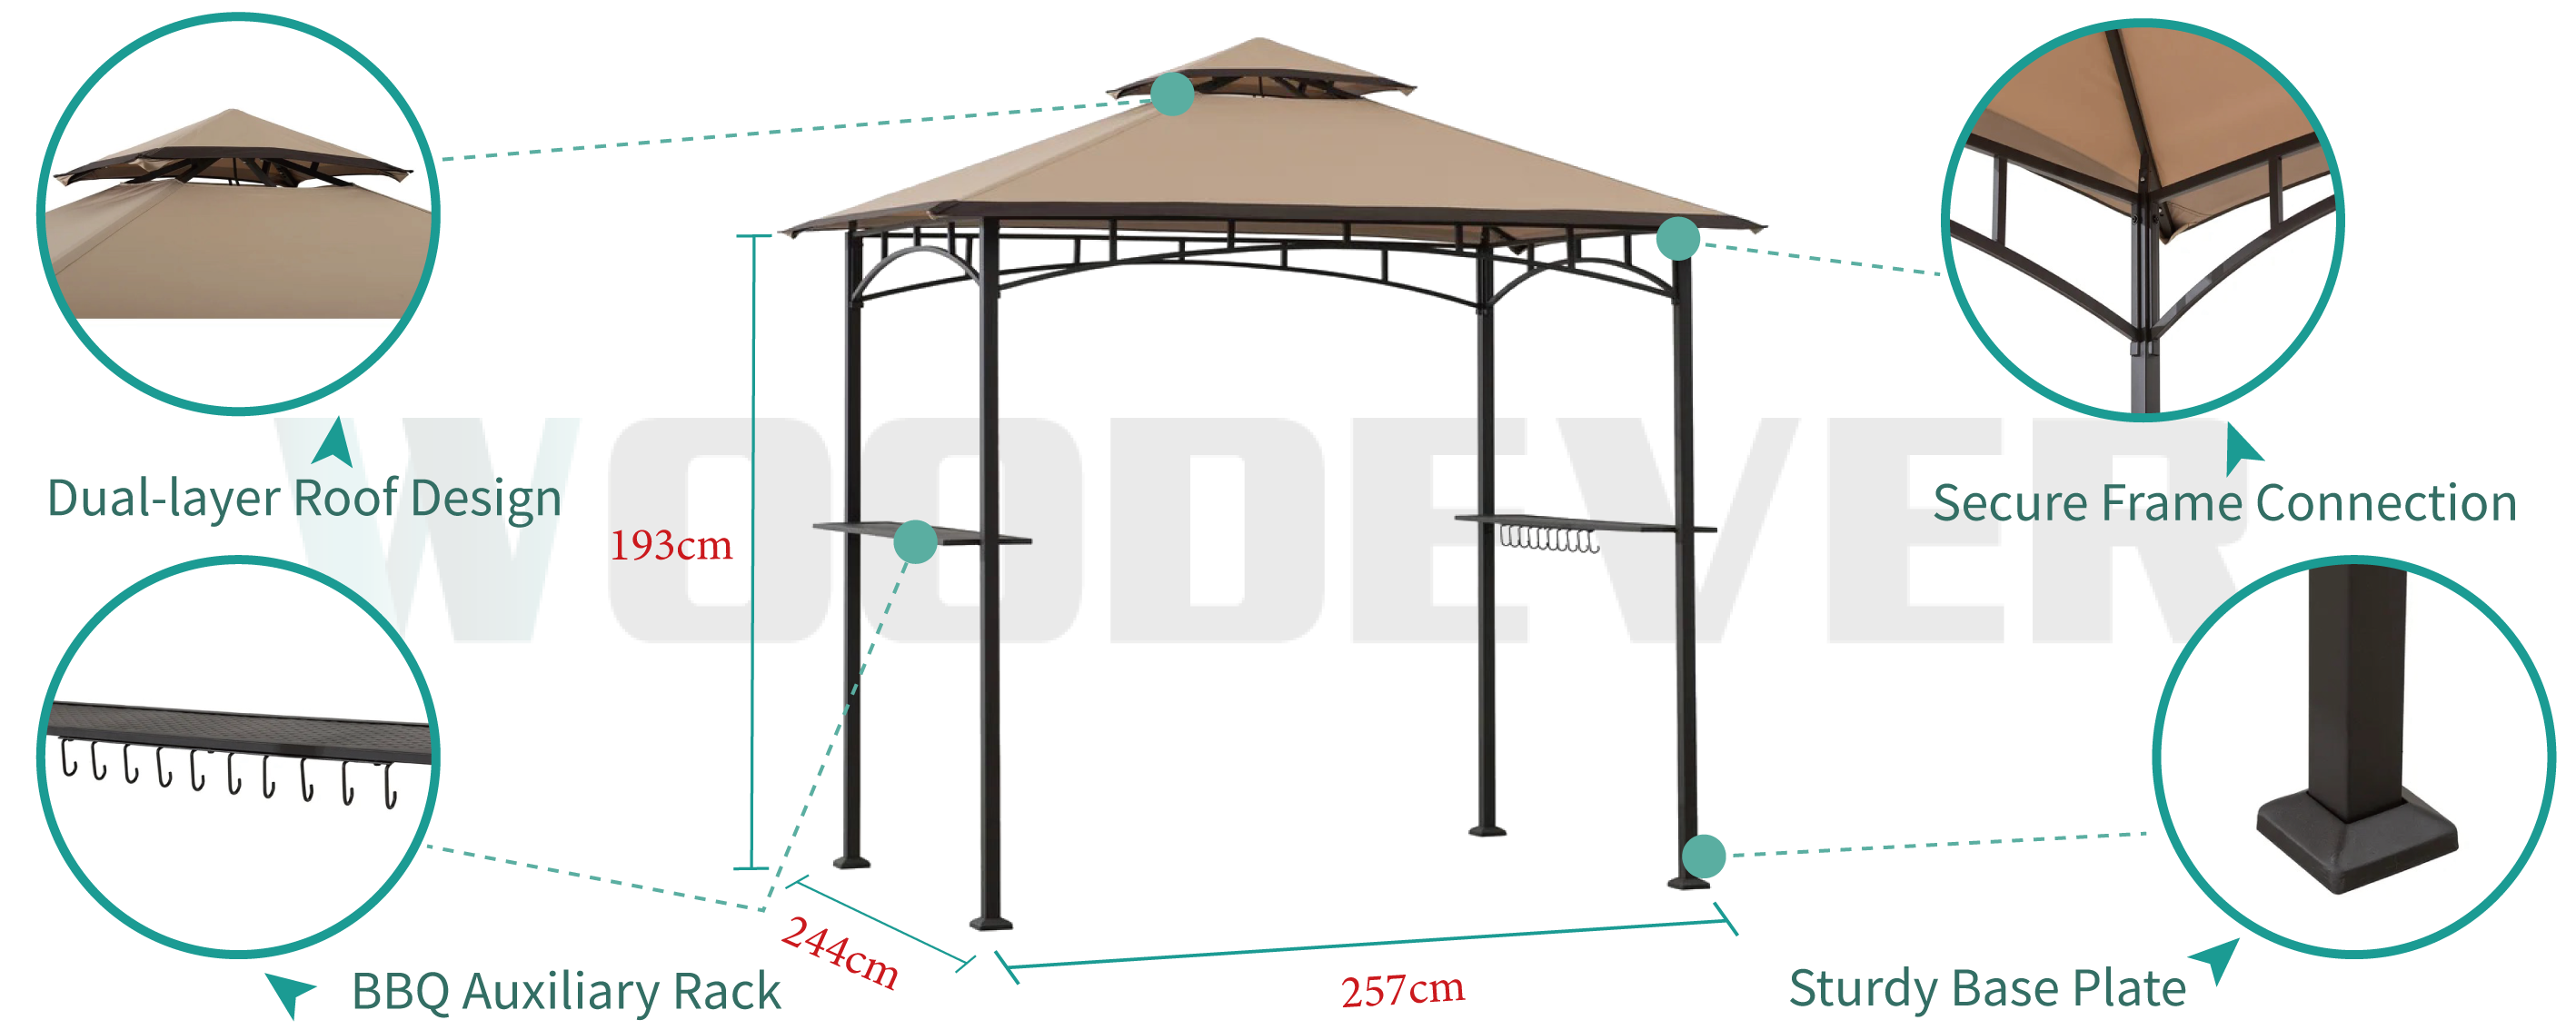 مظلة شواء خارجية معدنية من WOODEVER بتصميم سقف مزدوج، تهوية بزاوية 360 درجة، مع رفوف معدنية وخطافات لزيادة تجربة الاستخدام في الهواء الطلق.